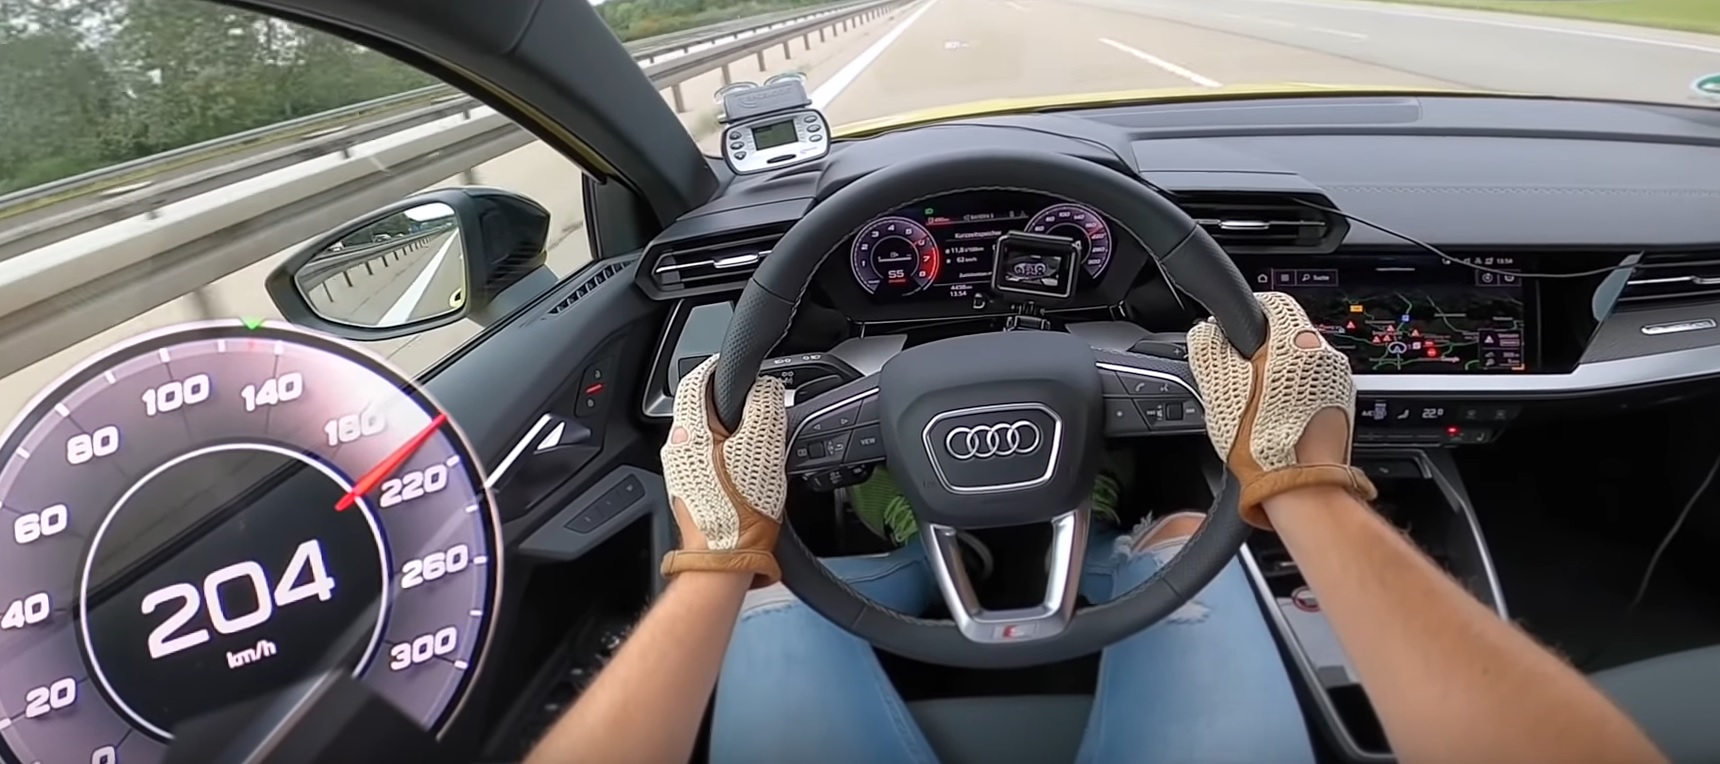 Audi S3 2021 przyspieszenie od 100 do 200 km/h (wideo